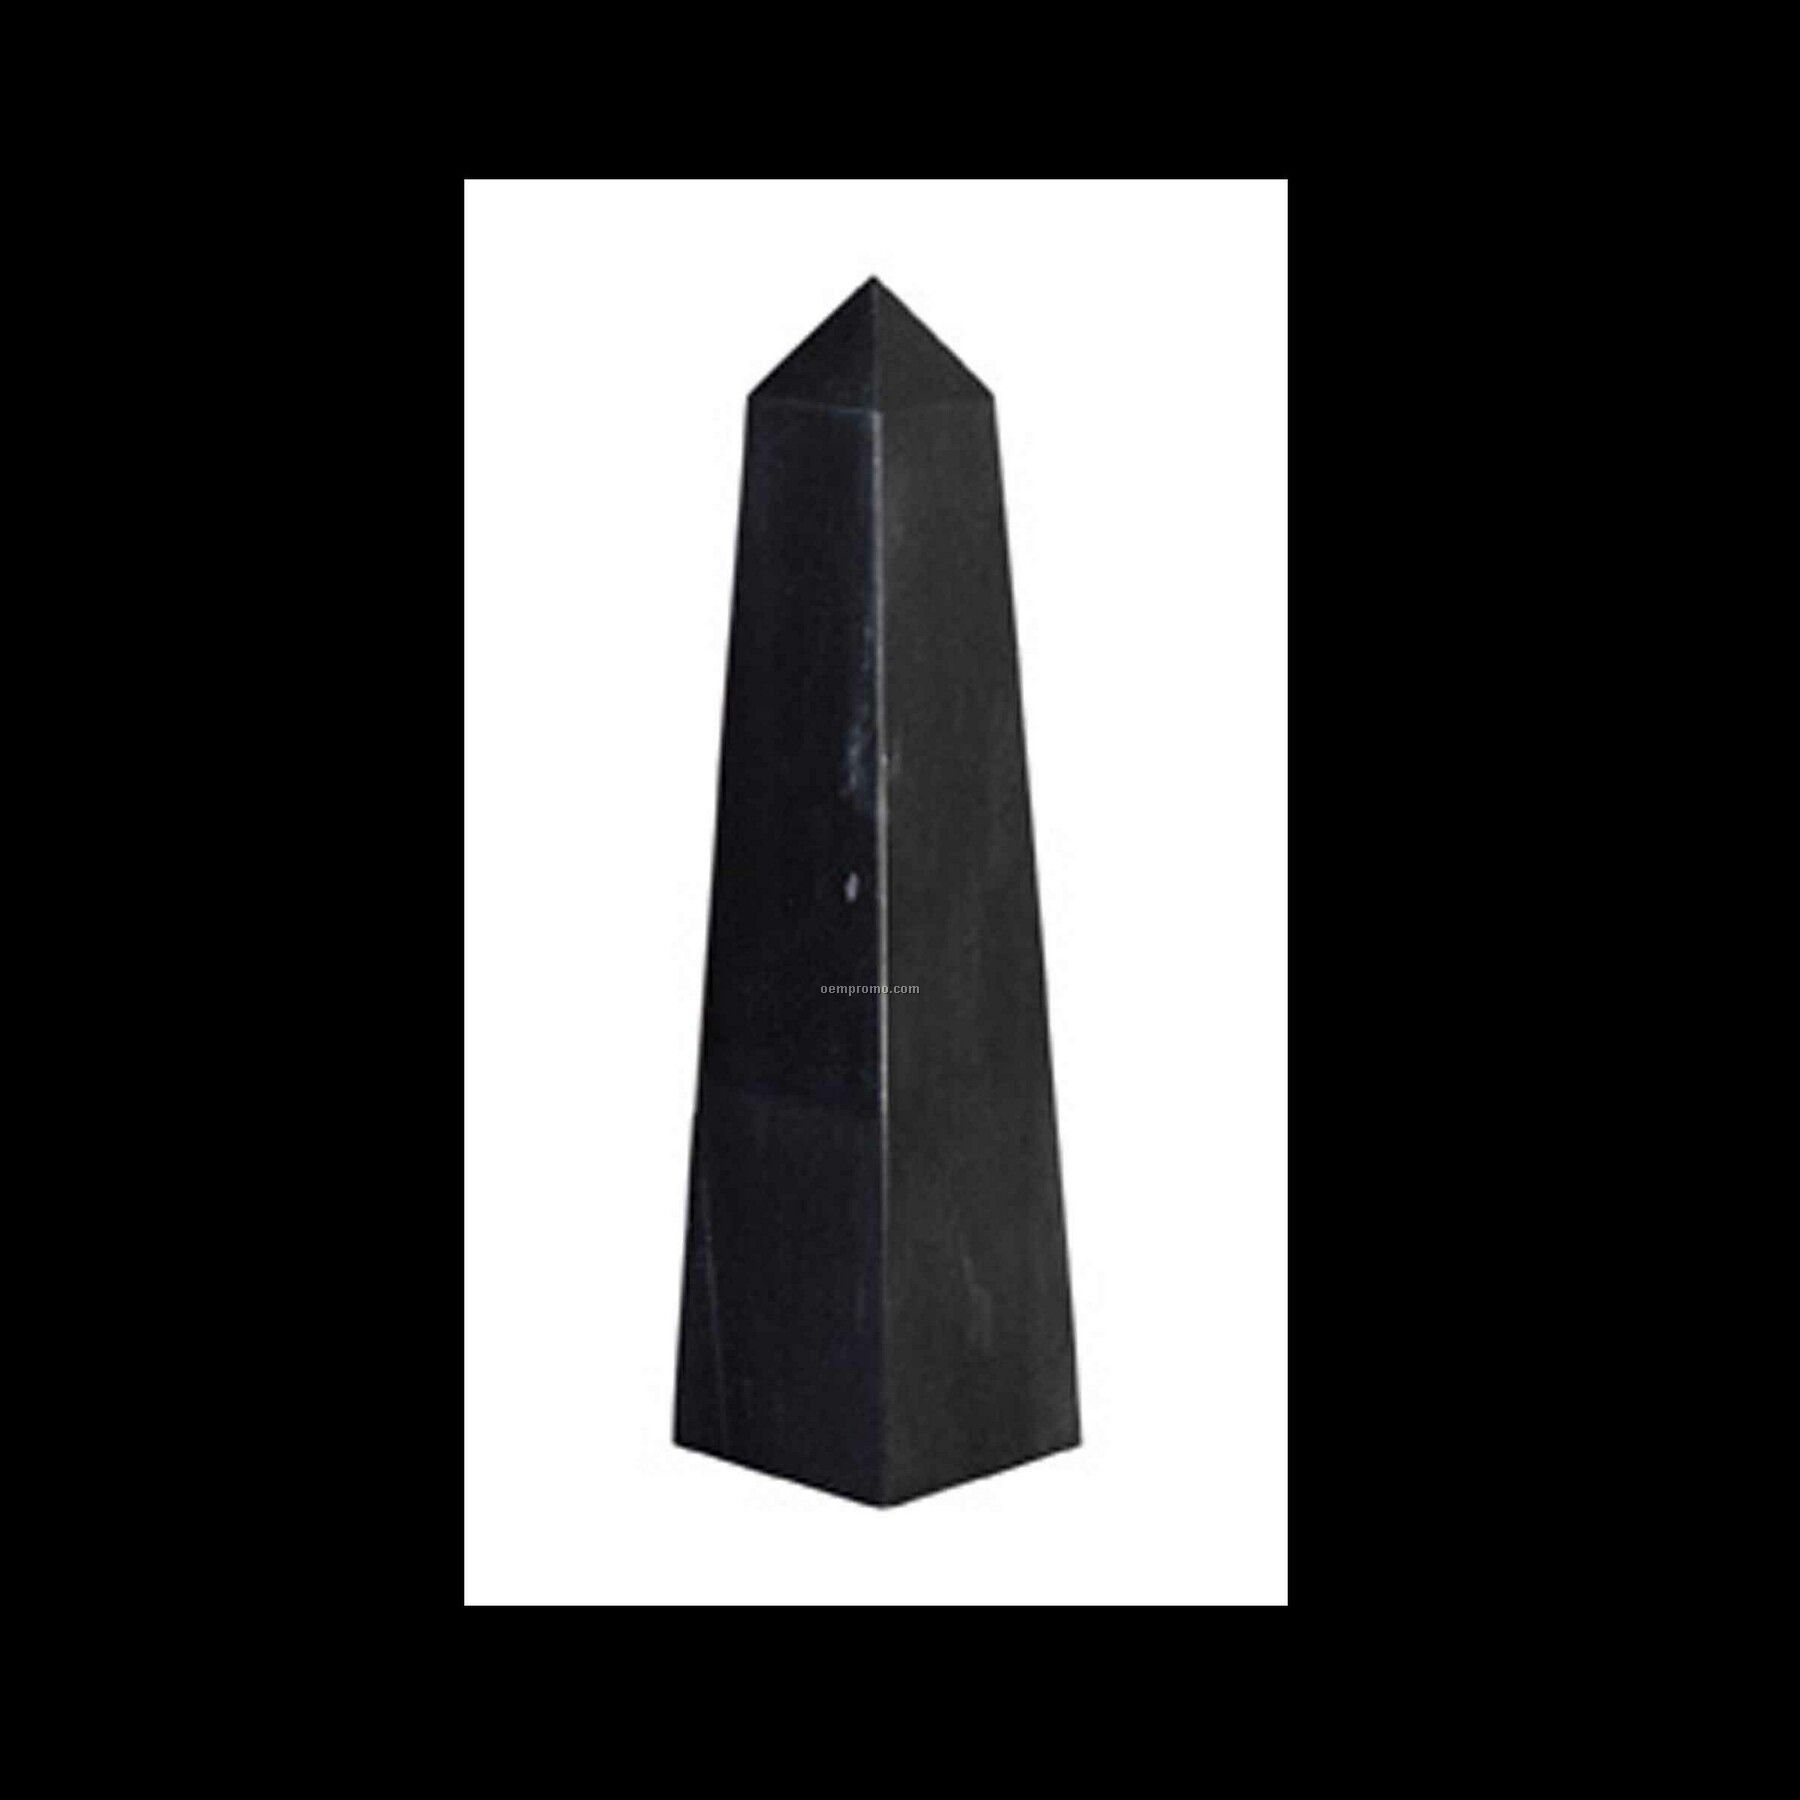 Medium Obelisk Pinnacle Award